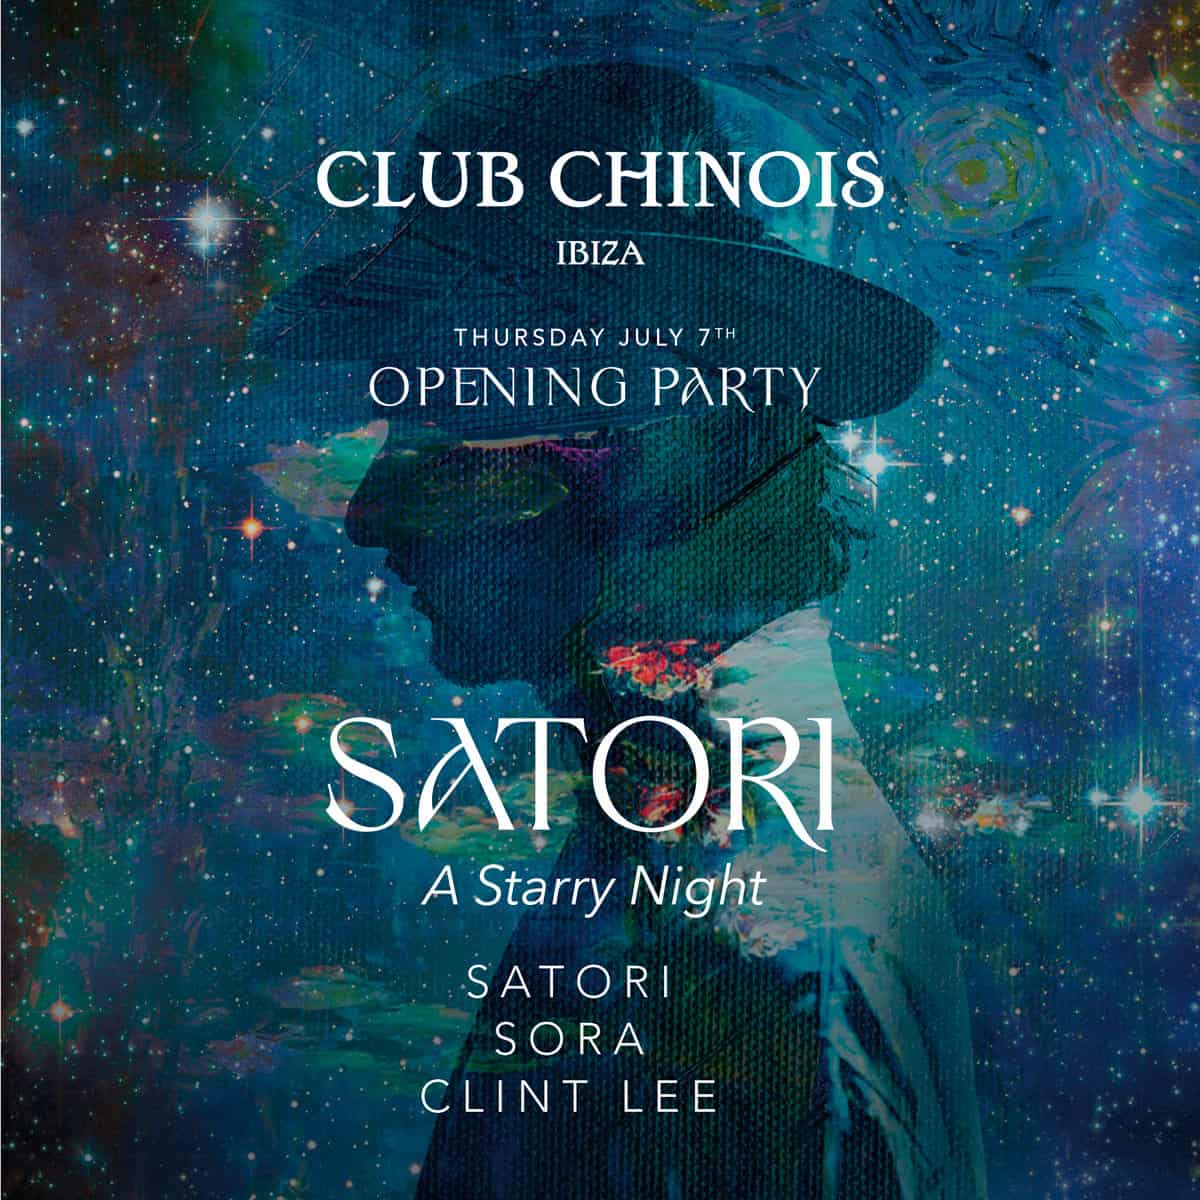 Открытие звездной ночи с сатори в Club Chinois Fiestas Ibiza